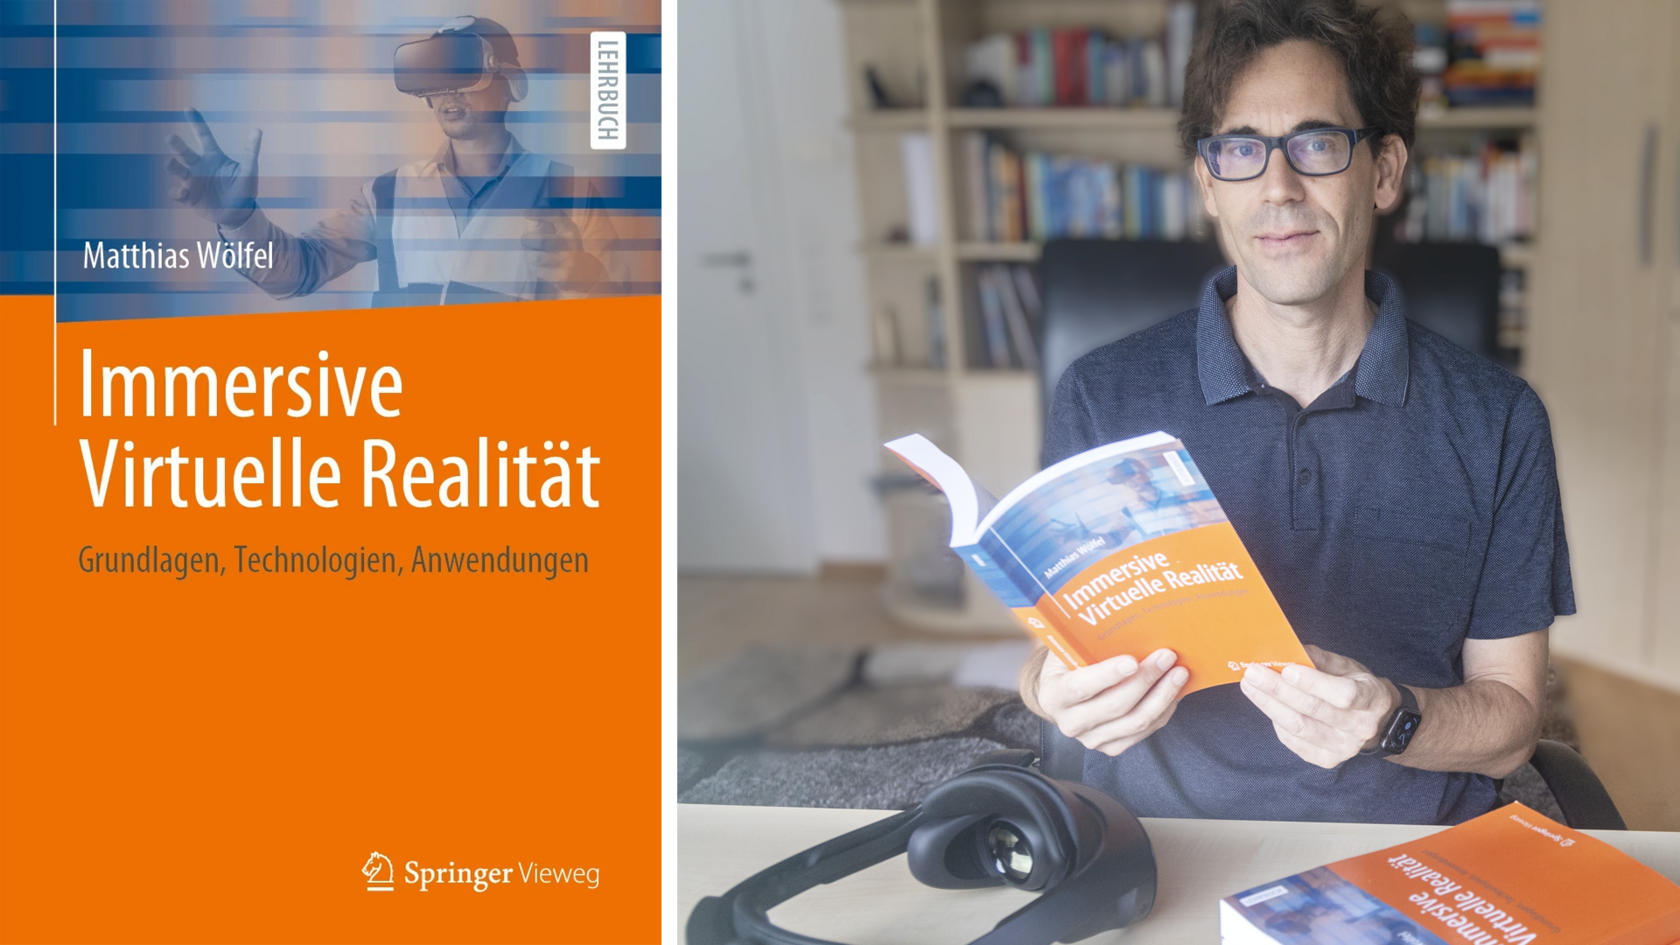 Prof. Dr. Matthias Wölfel mit seinem neuen Buch "Immersive Virtuelle Realität: Grundlagen, Technologien, Anwendungen"